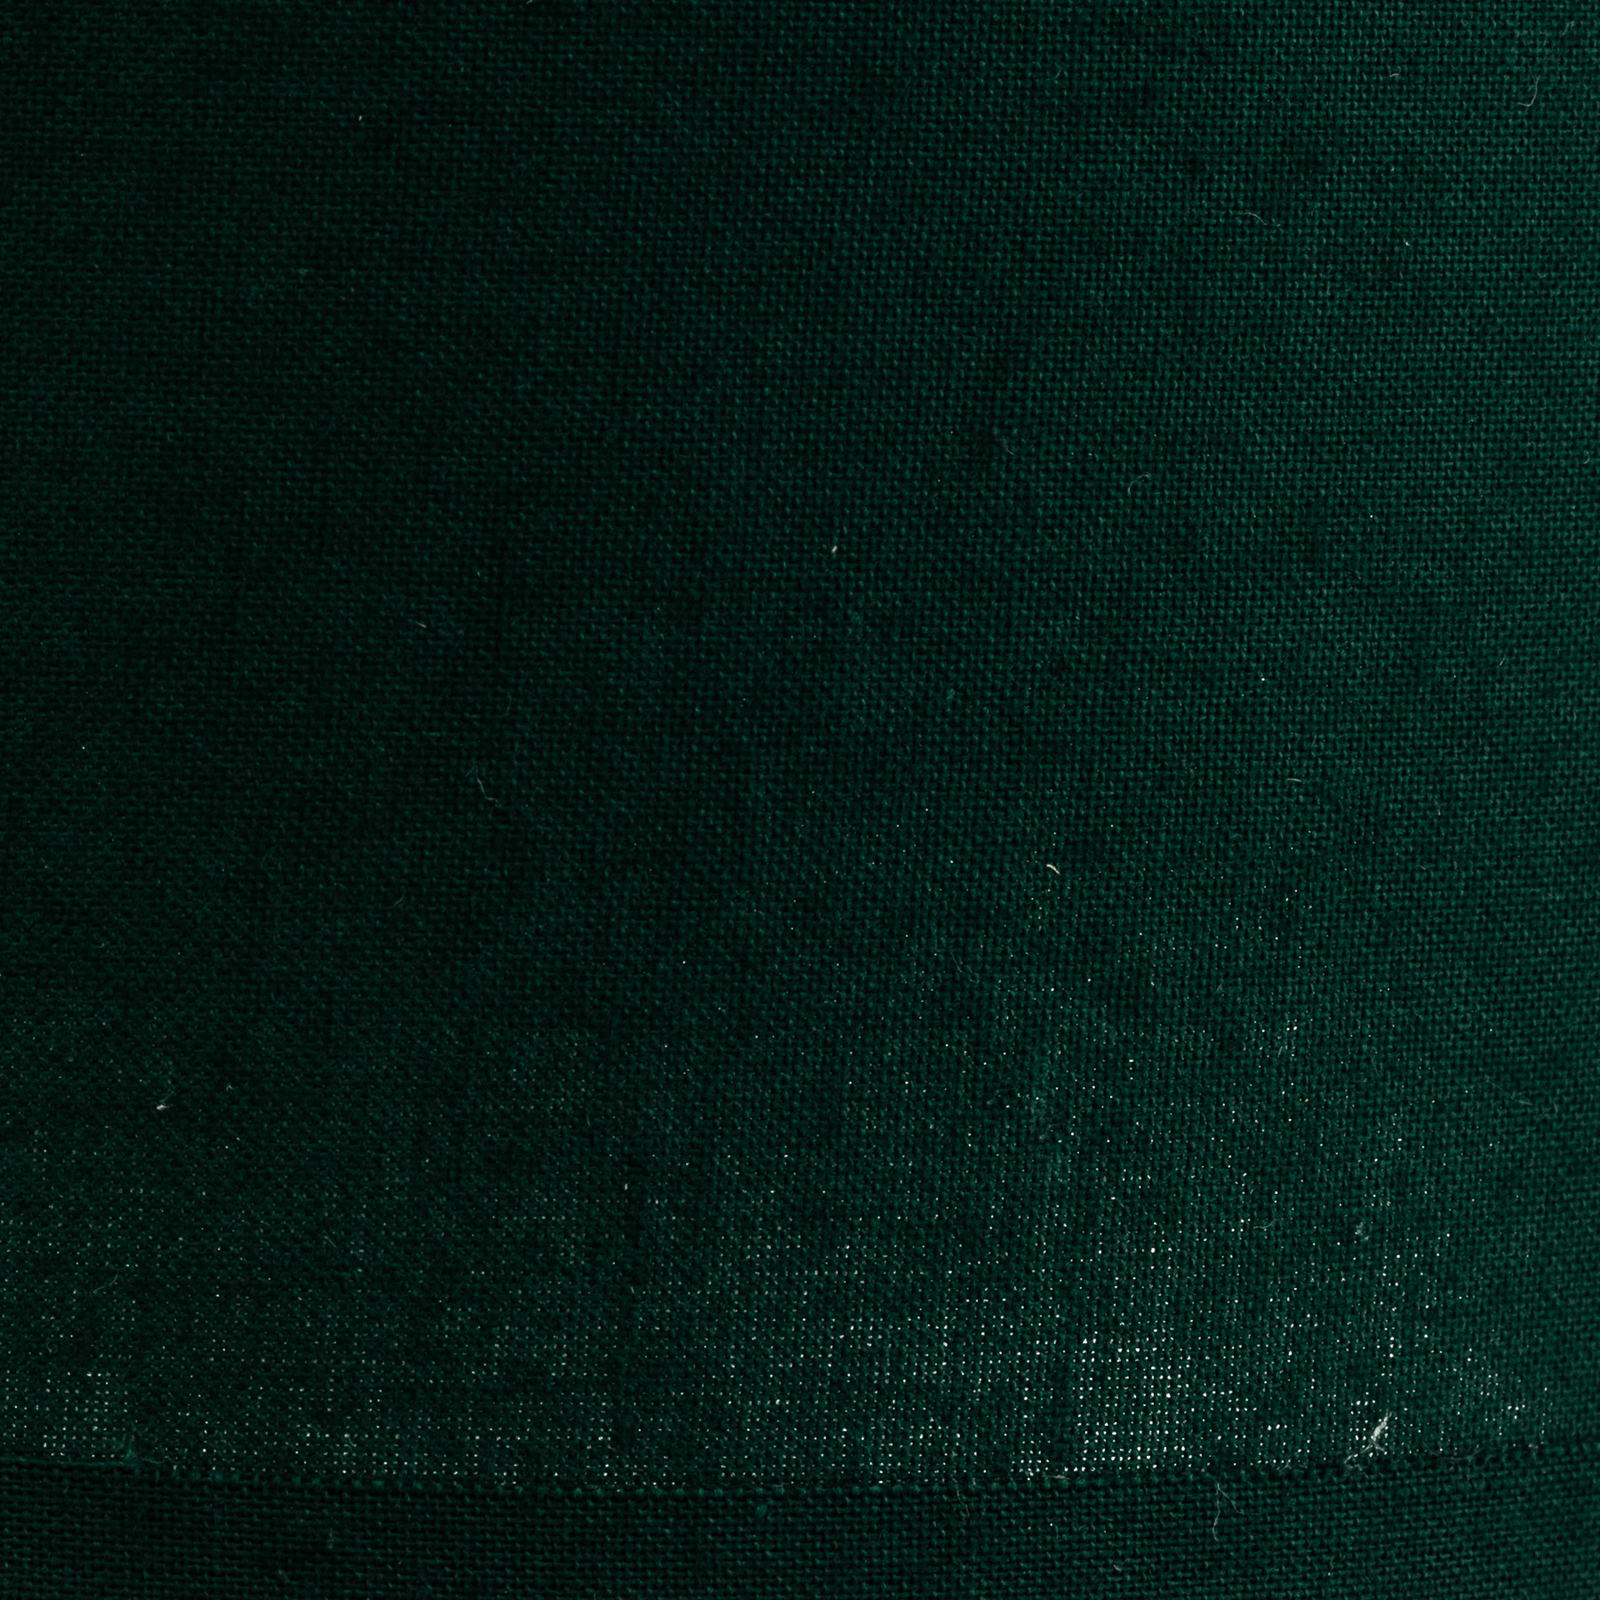 Lampeskjerm Roller, grønn, Ø 13 cm, høyde 15 cm